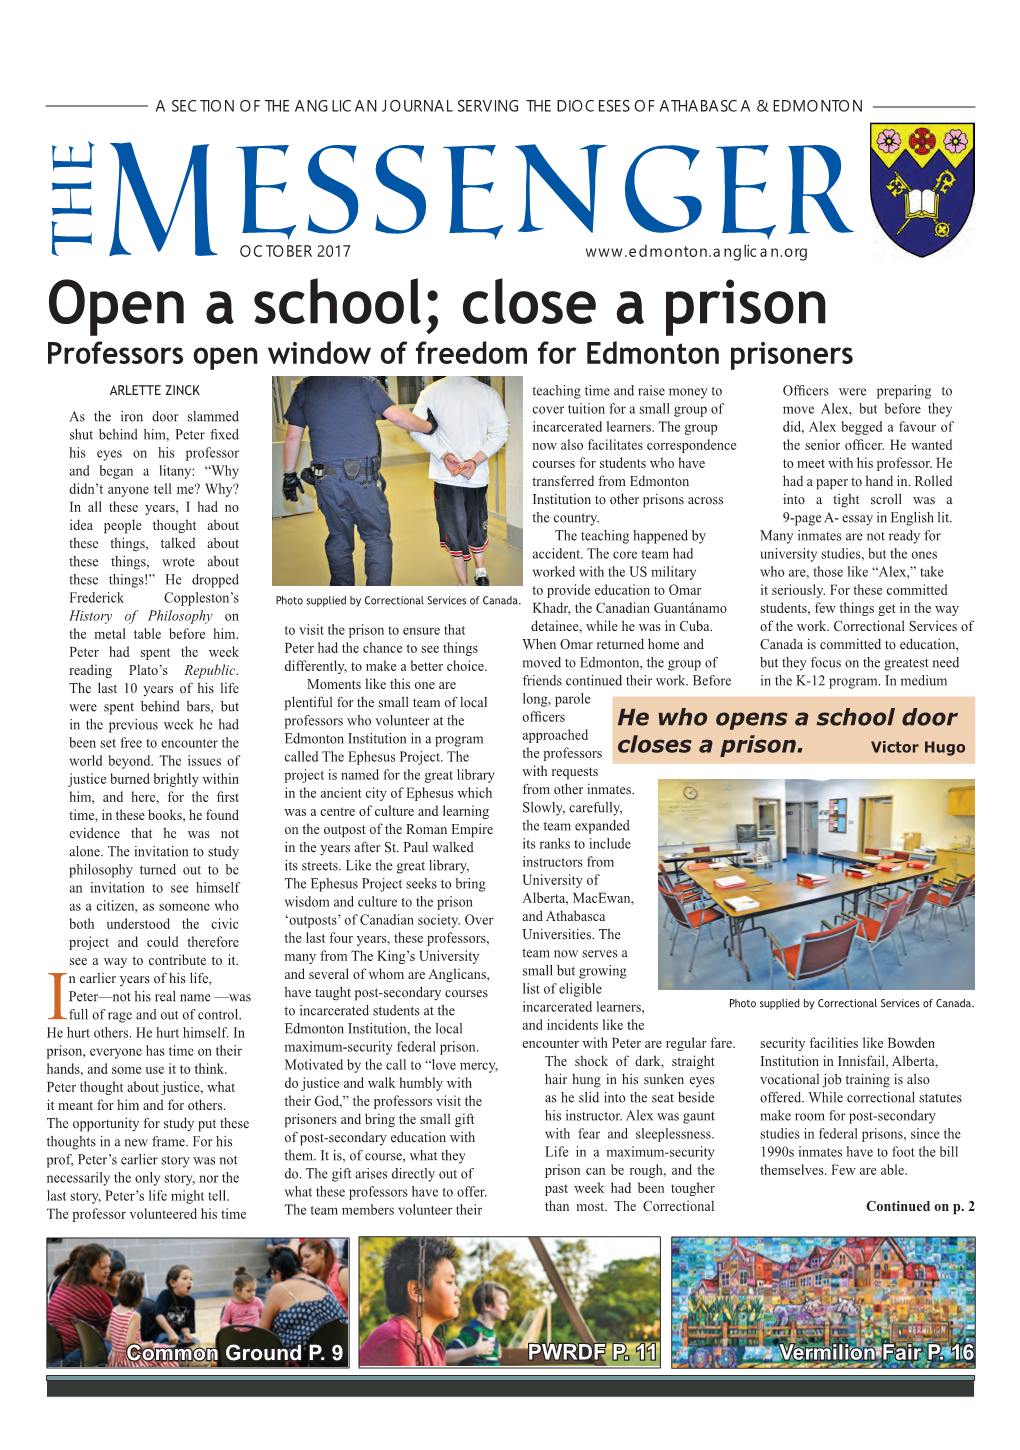 Open a School; Close a Prison